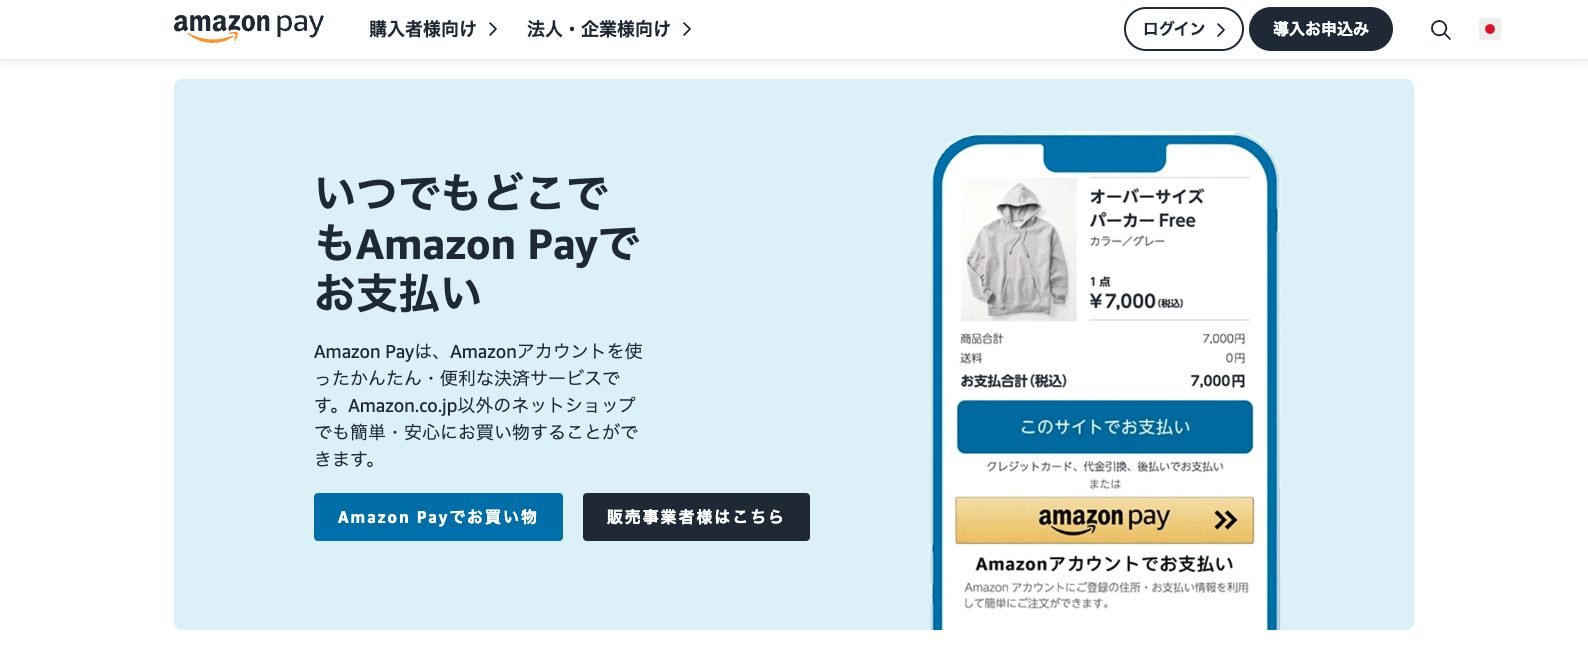 Amazon Pay公式サイトキャプチャ